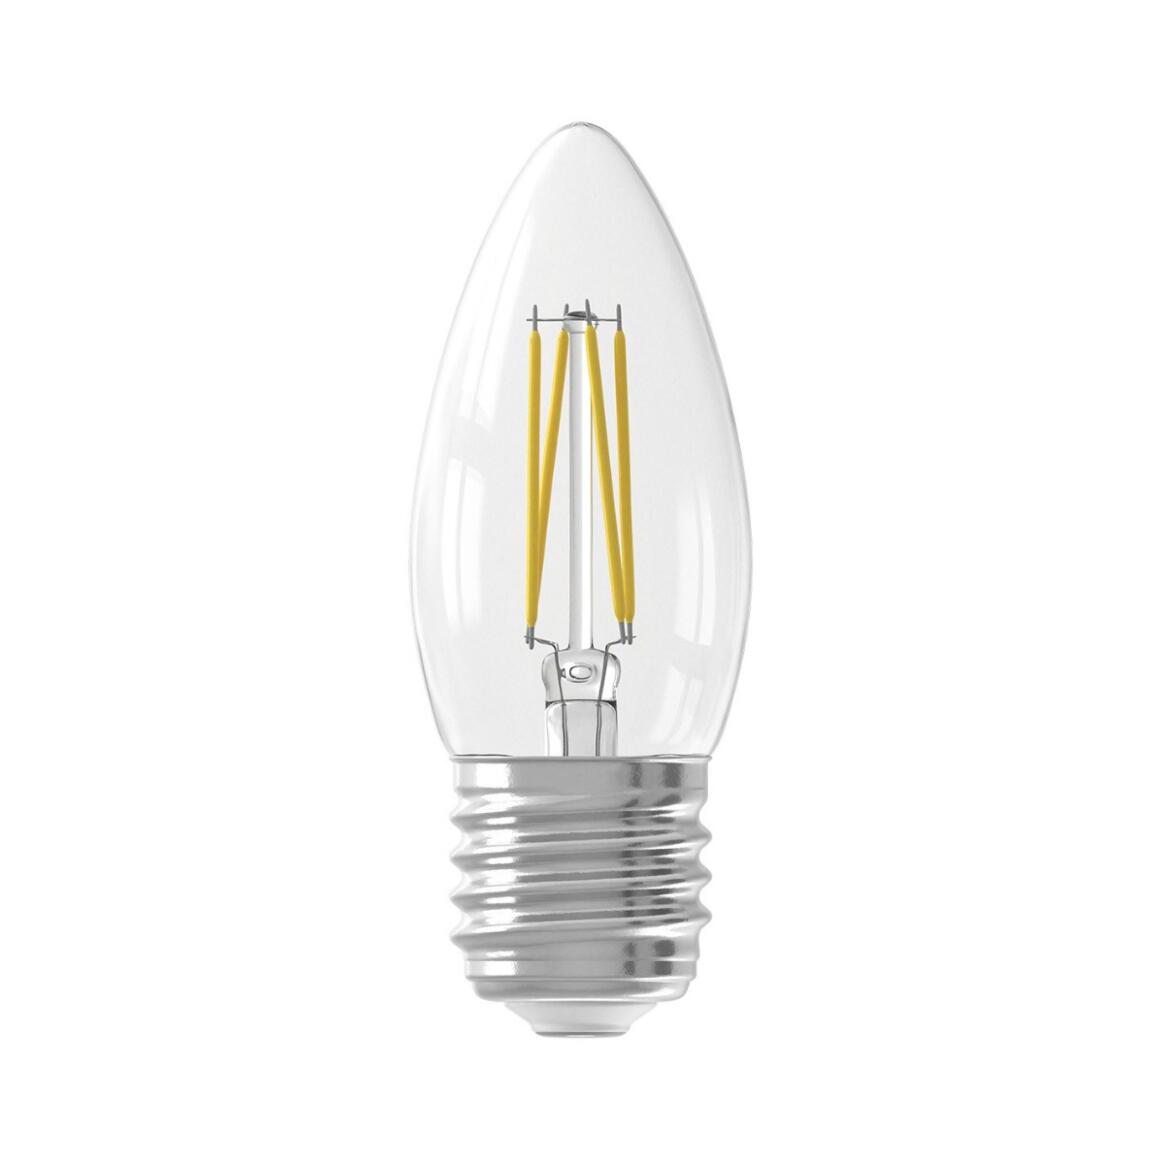 Ampoule LED à filament blanc chaud variable d'intensité E27 3.5W 2700k 350lm 9.3cm main product image